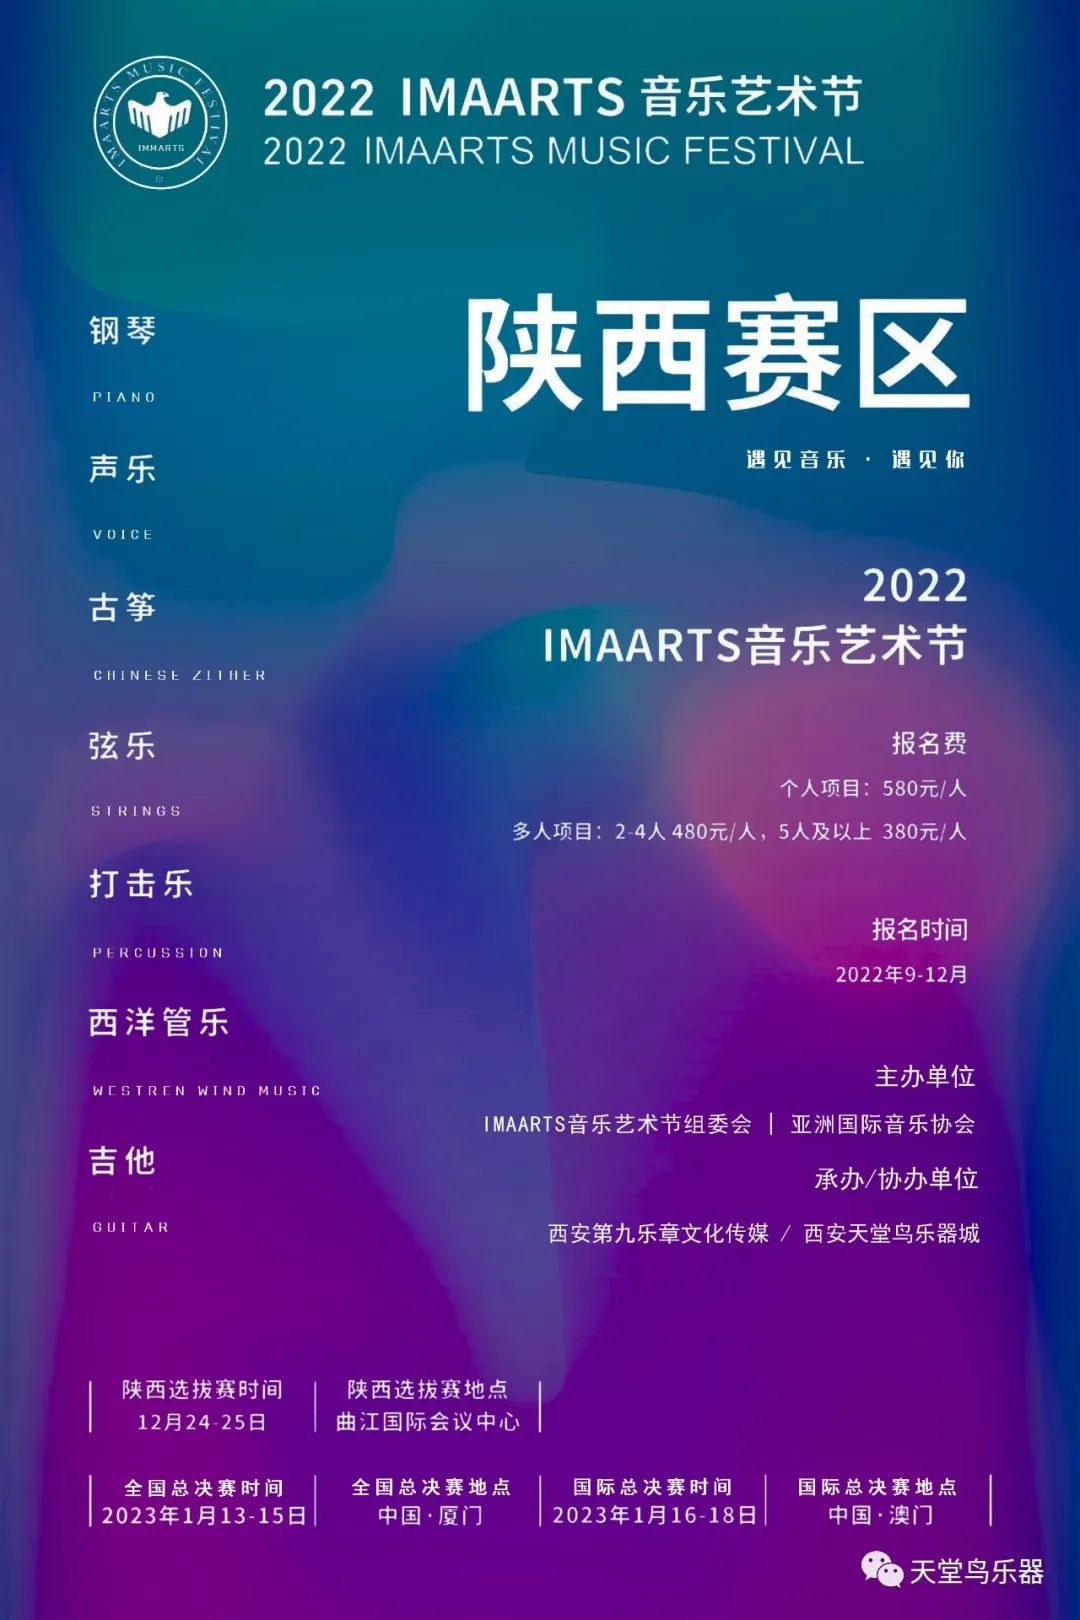 【比赛报名】2022 IMAARTS音乐艺术节（陕西赛区）报名开始